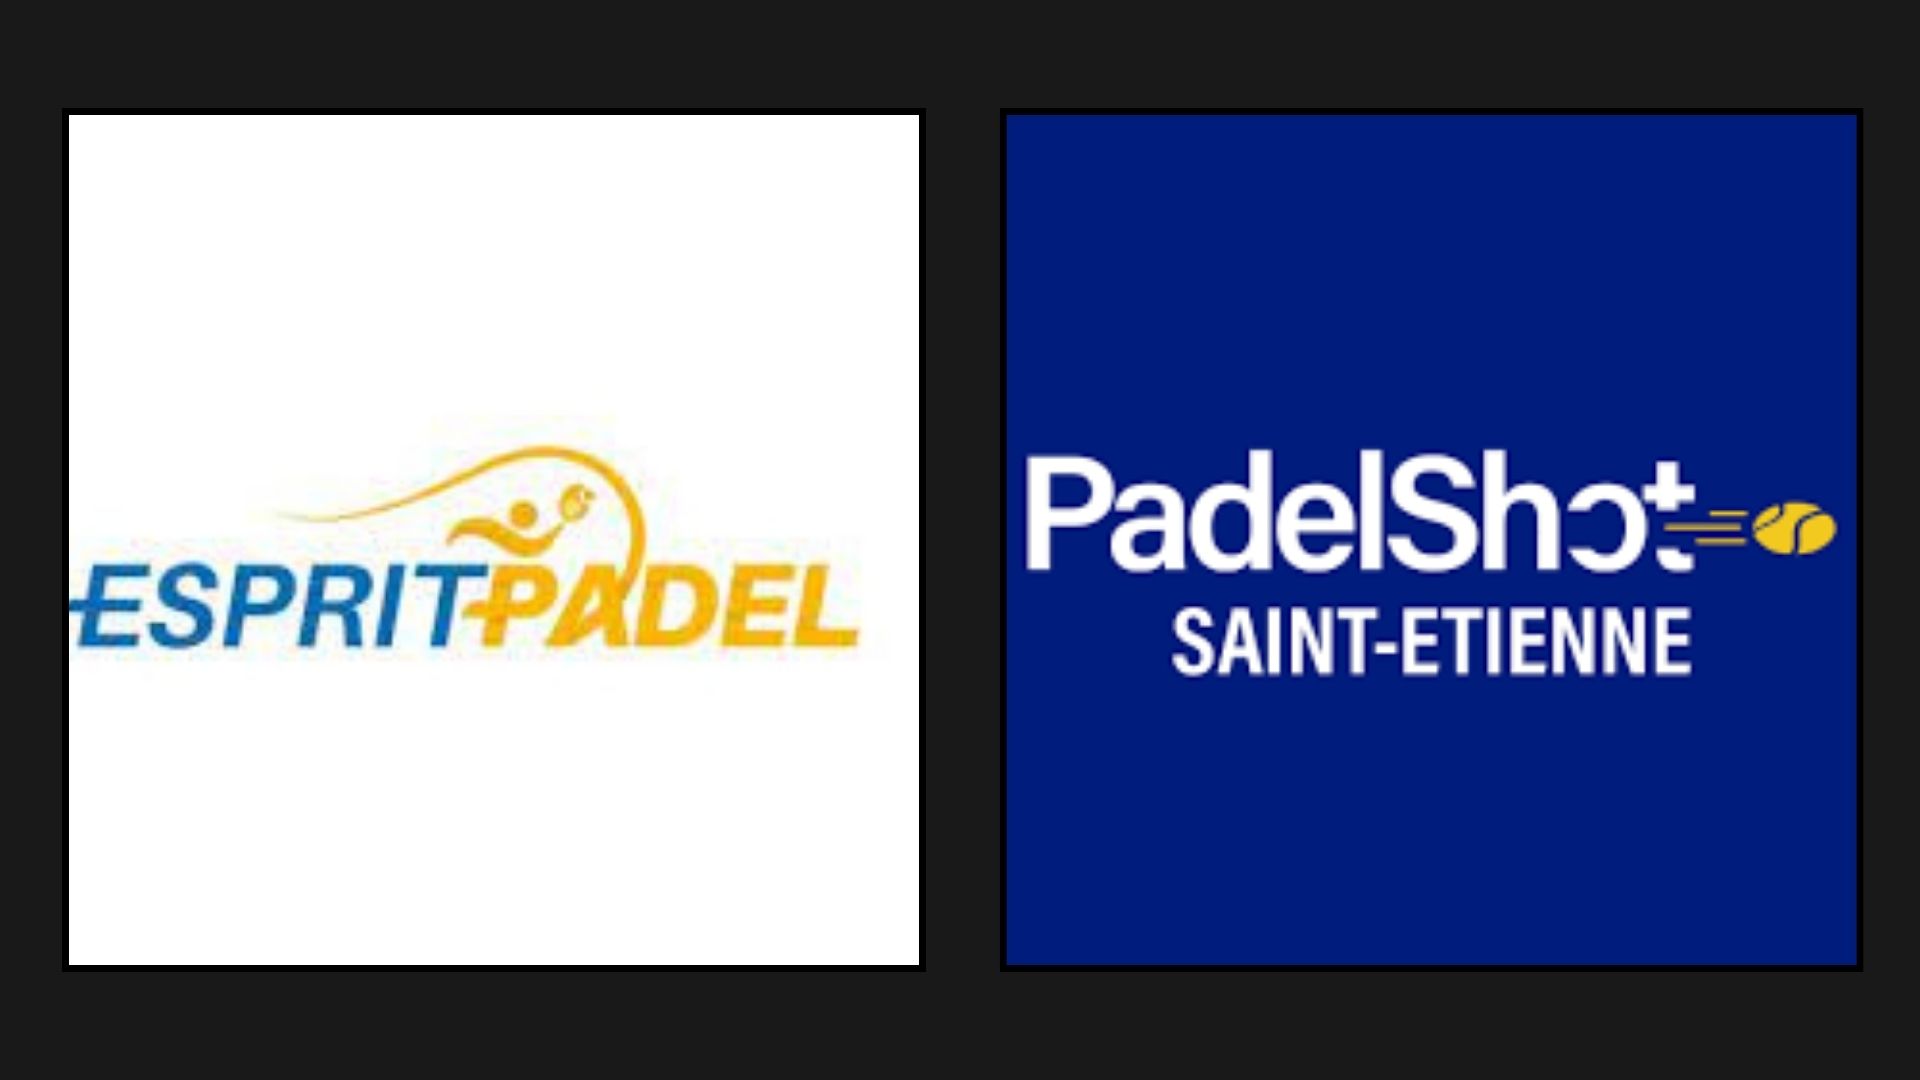 È tempo delle semifinali al P1500 PadelHanno sparato a Saint-Etienne ed Esprit Padel Lione